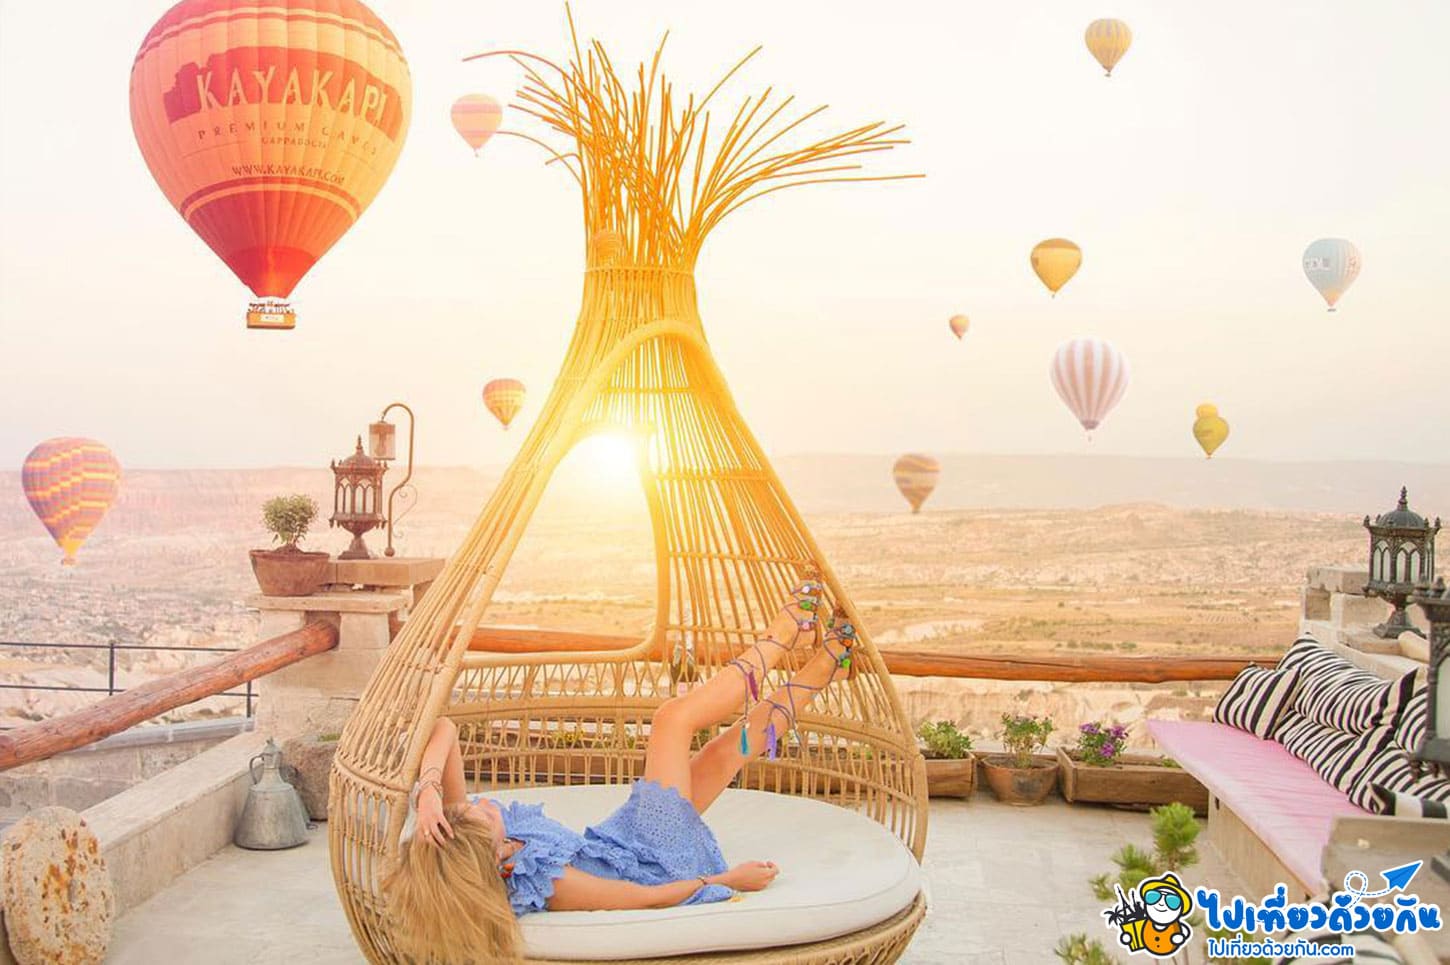 โรงแรมร็อค คัปปาโดเกีย Rox Cappadocia โรงแรมที่ดูบอลลูนยามเช้าสวยที่สุดใน อุชิซ่าร์ คัปปาโดเกีย